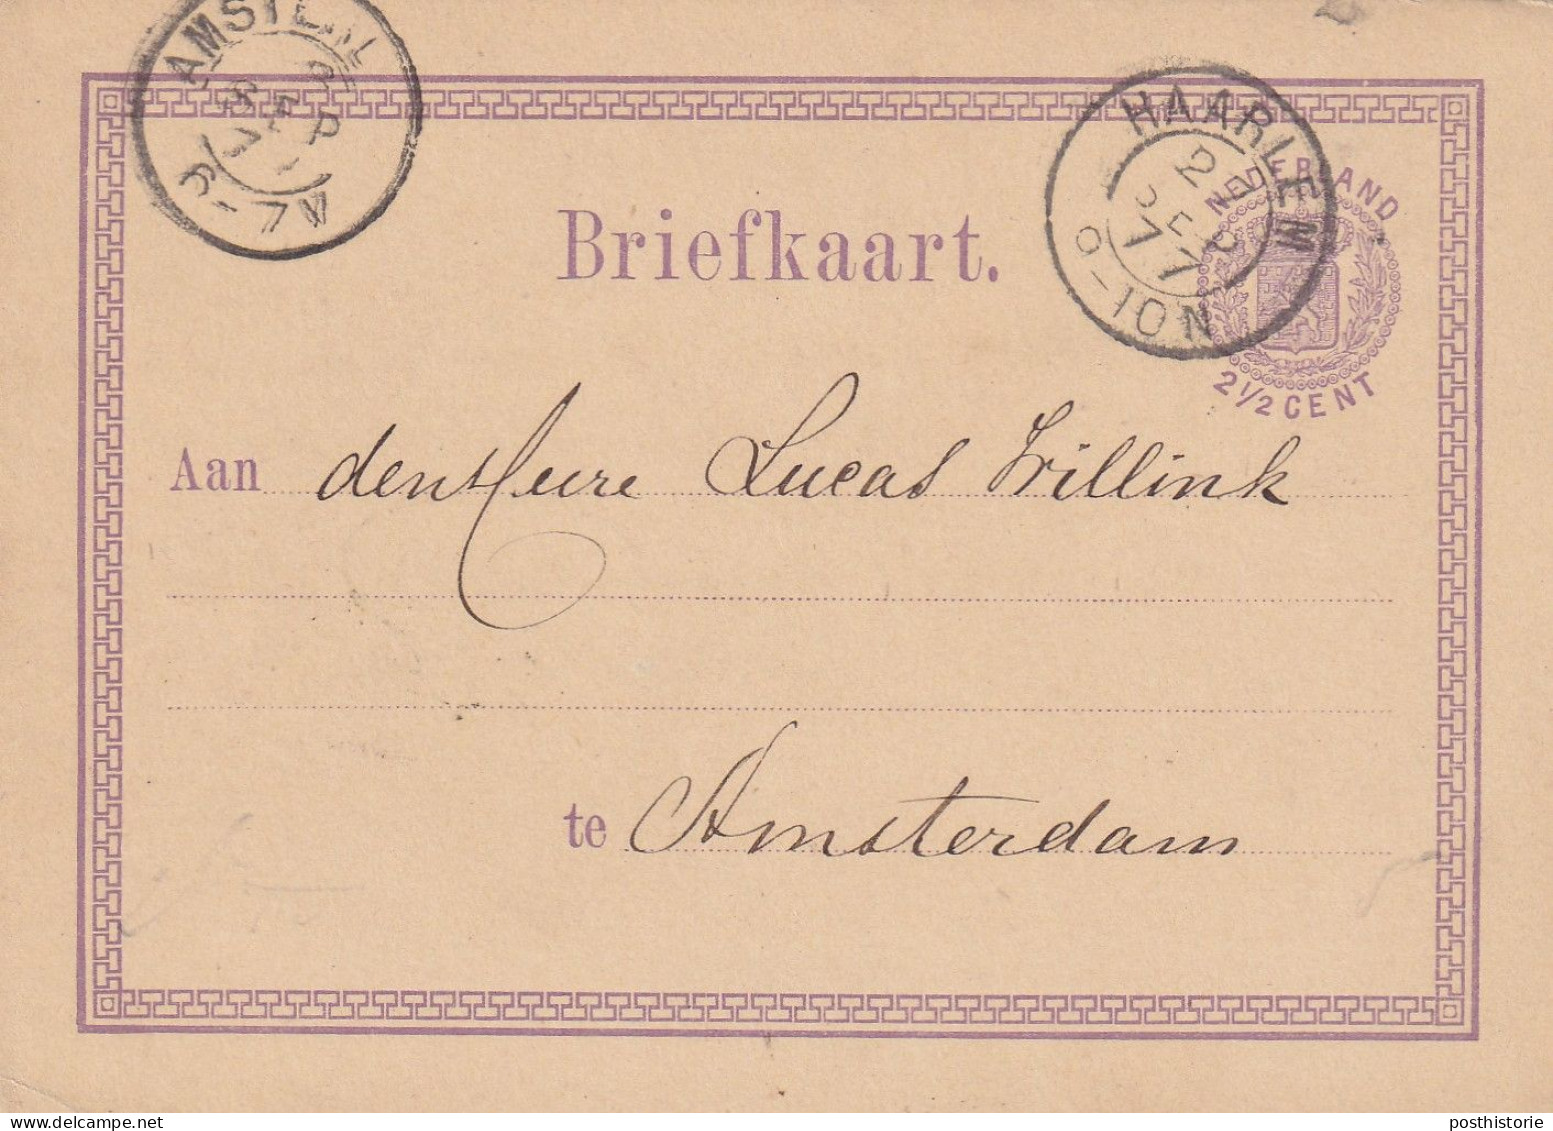 Briefkaart Firmastempel  27 Sep 1877 Haarlem (vroeg Kleinrrond) Naar Amsterdam - Storia Postale